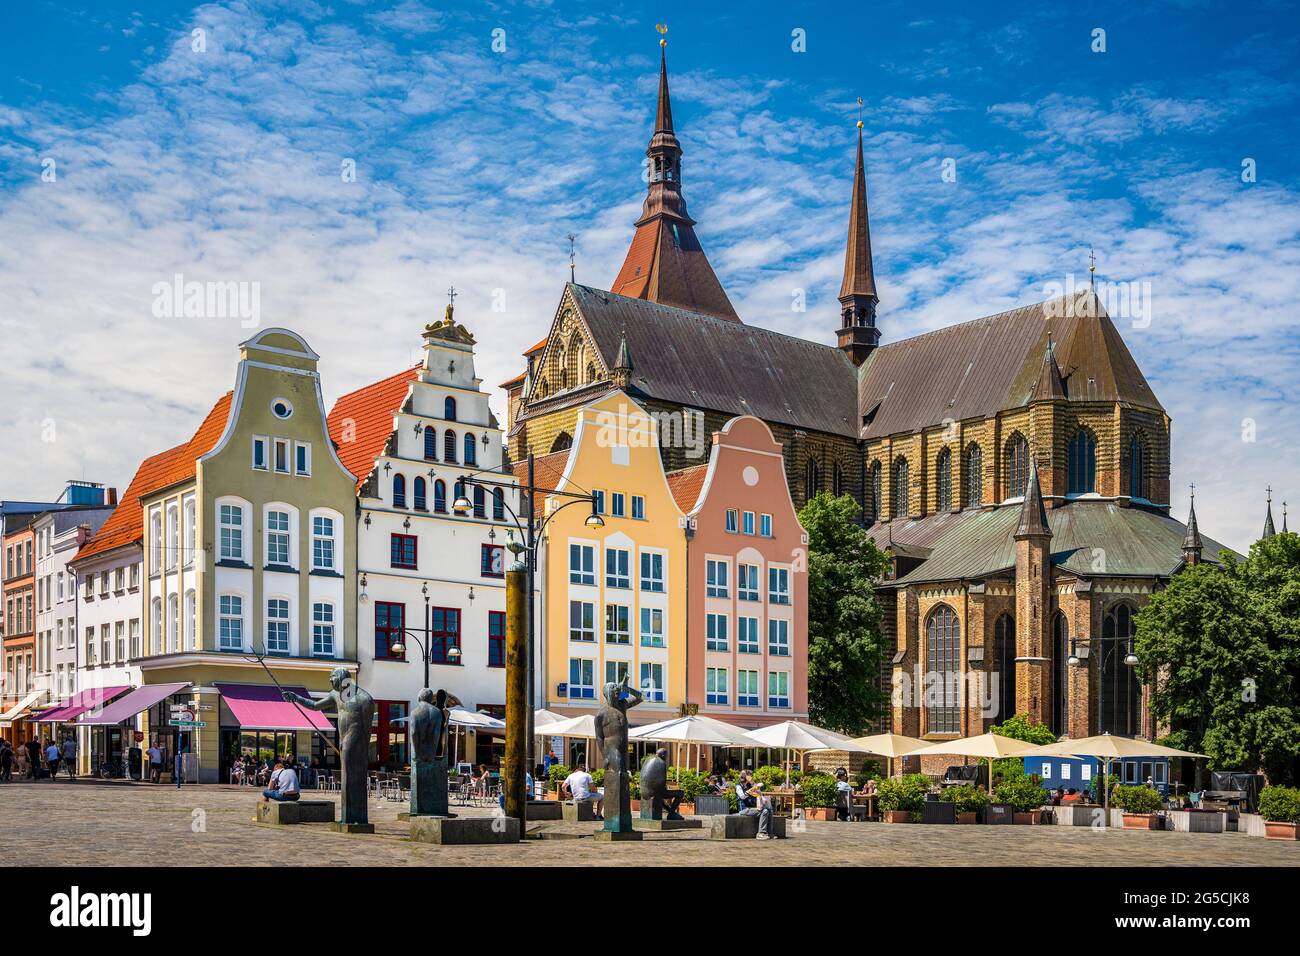 Place Neuer Markt dans la vieille ville de Rostock, Allemagne Banque D'Images